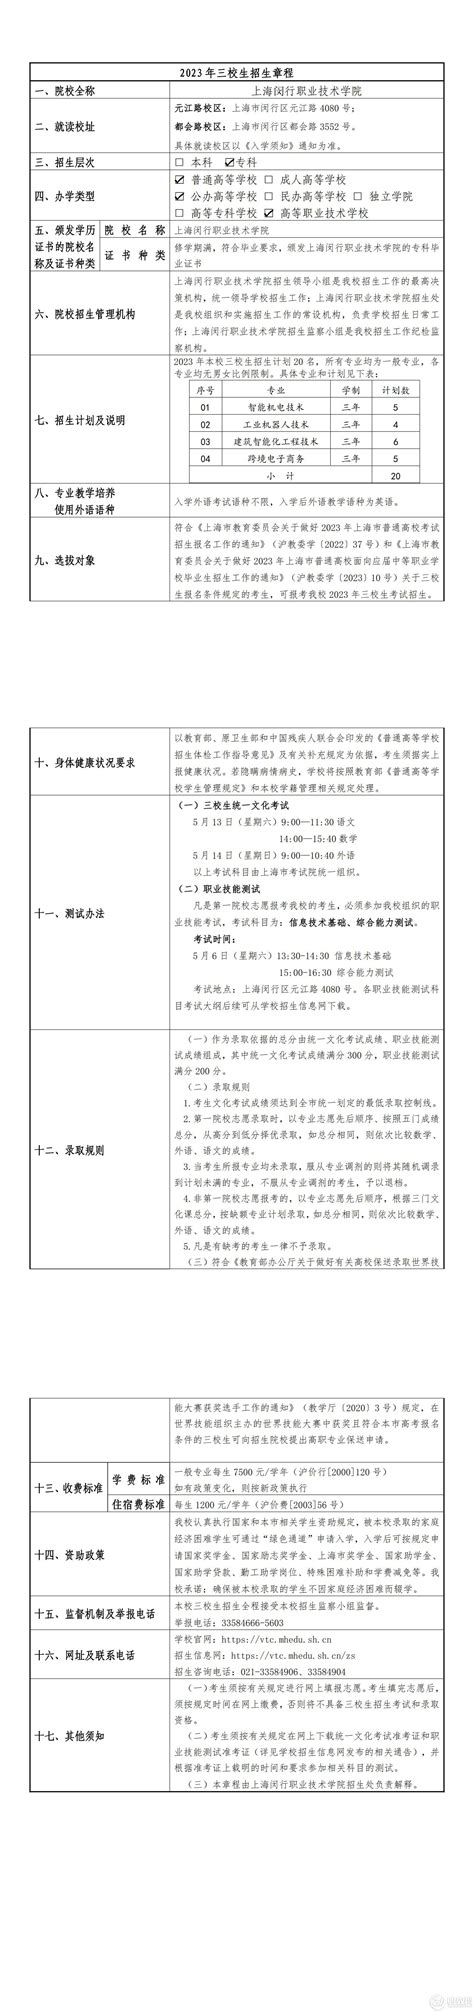 上海闵行职业技术学院2023年三校生招生章程 - 职教网